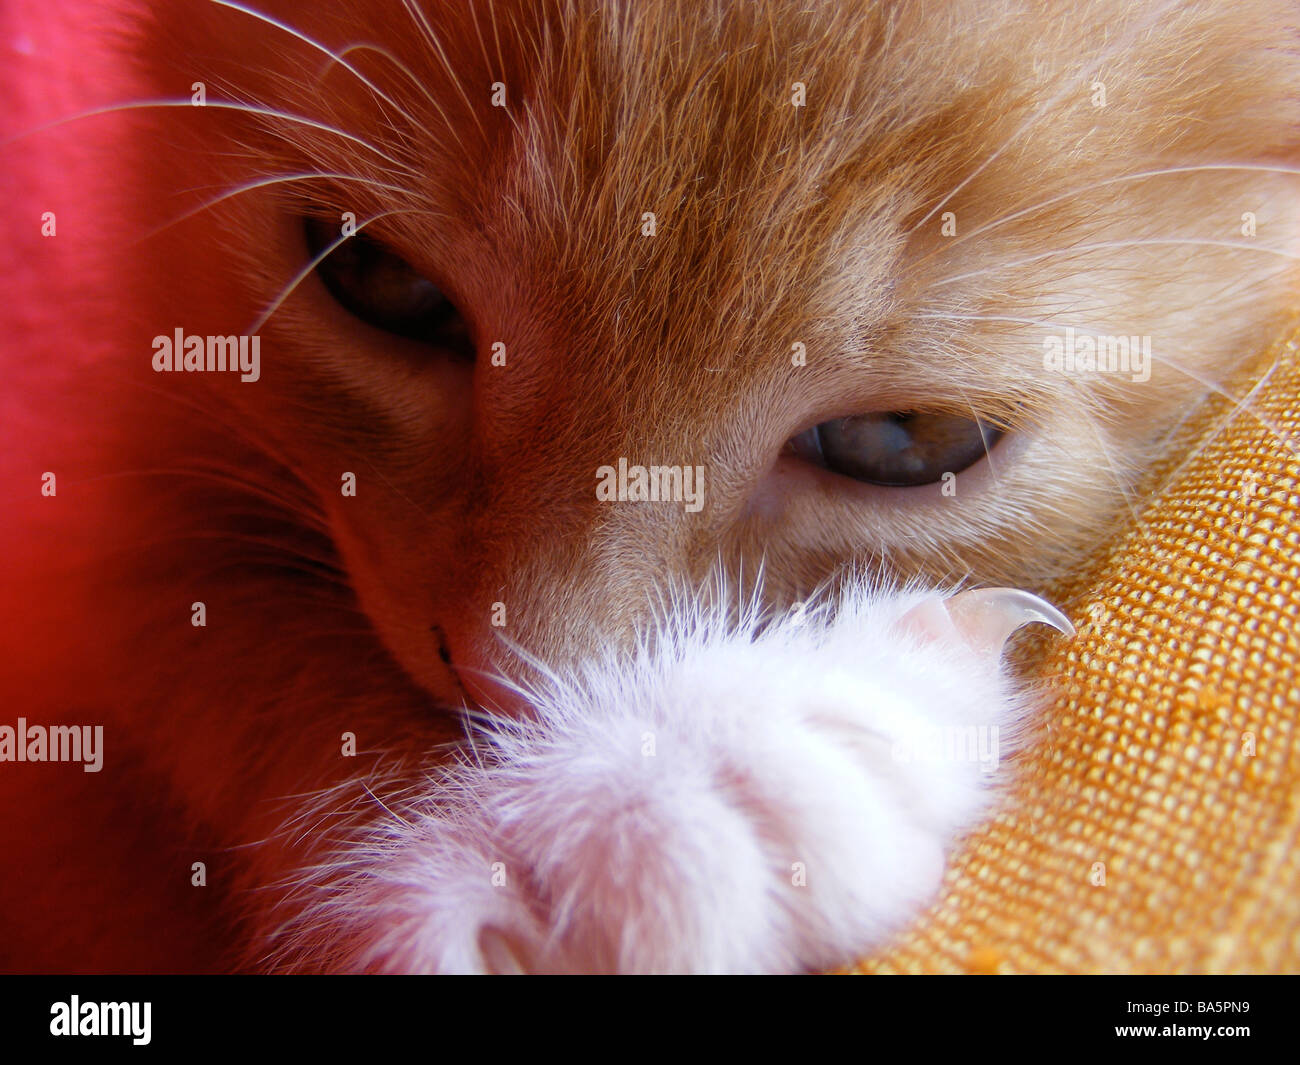 ginger kitten Stock Photo